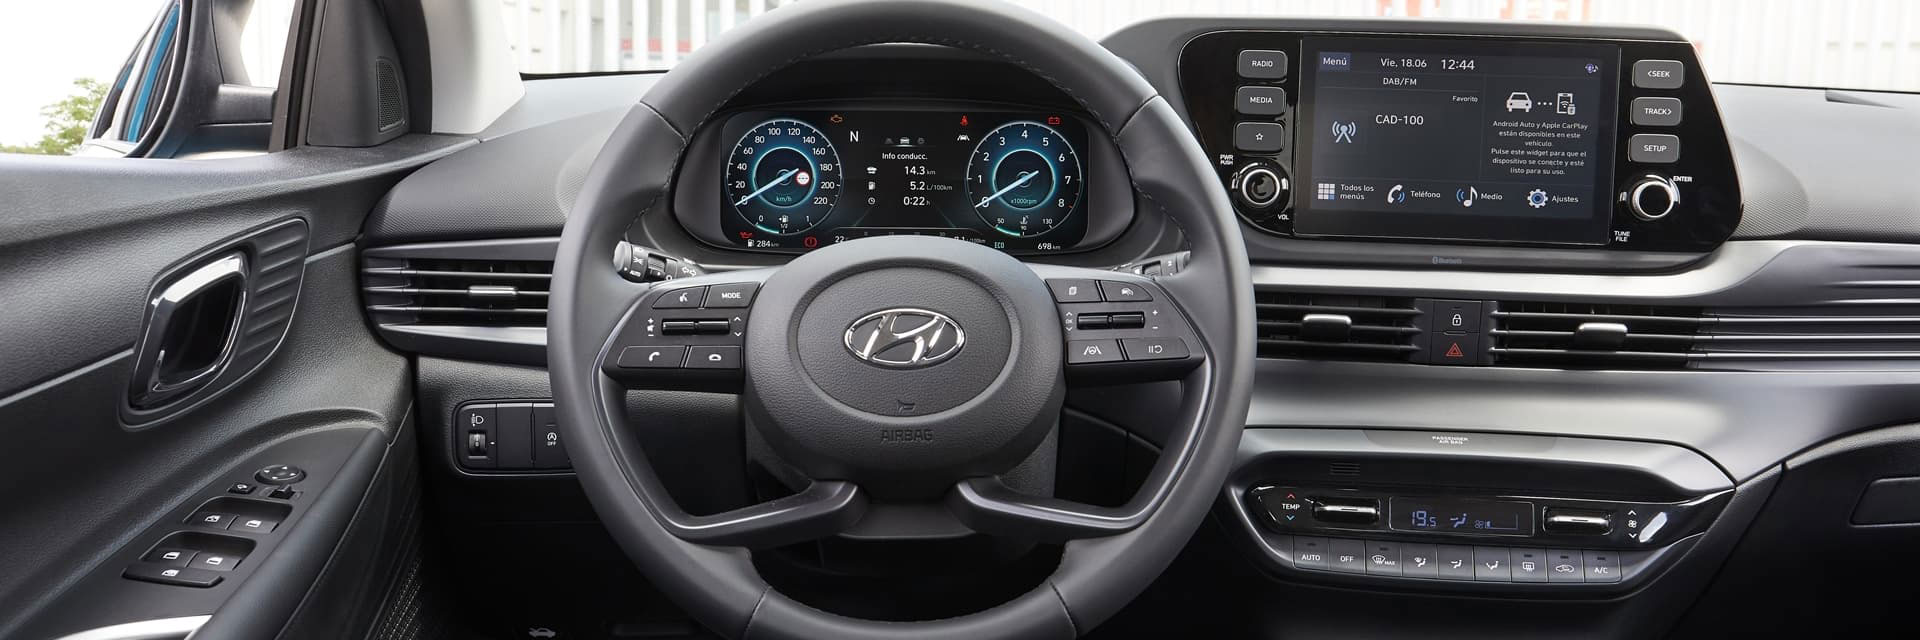 Hyundai Bayon, carros novos, carros km0, carros serviço, carros usados